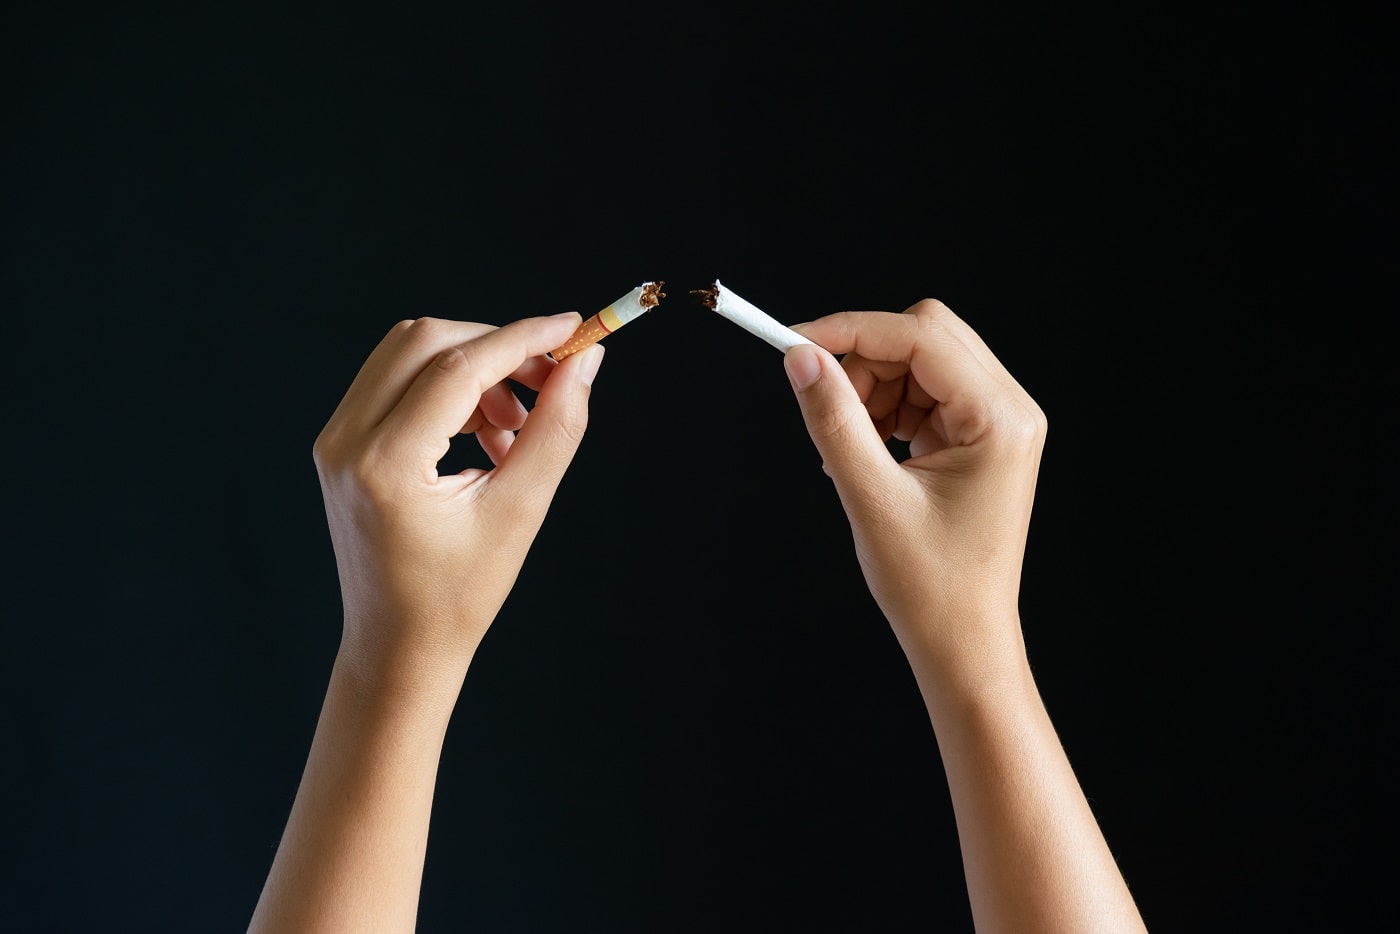 Verringert Rauchen die Fruchtbarkeit?